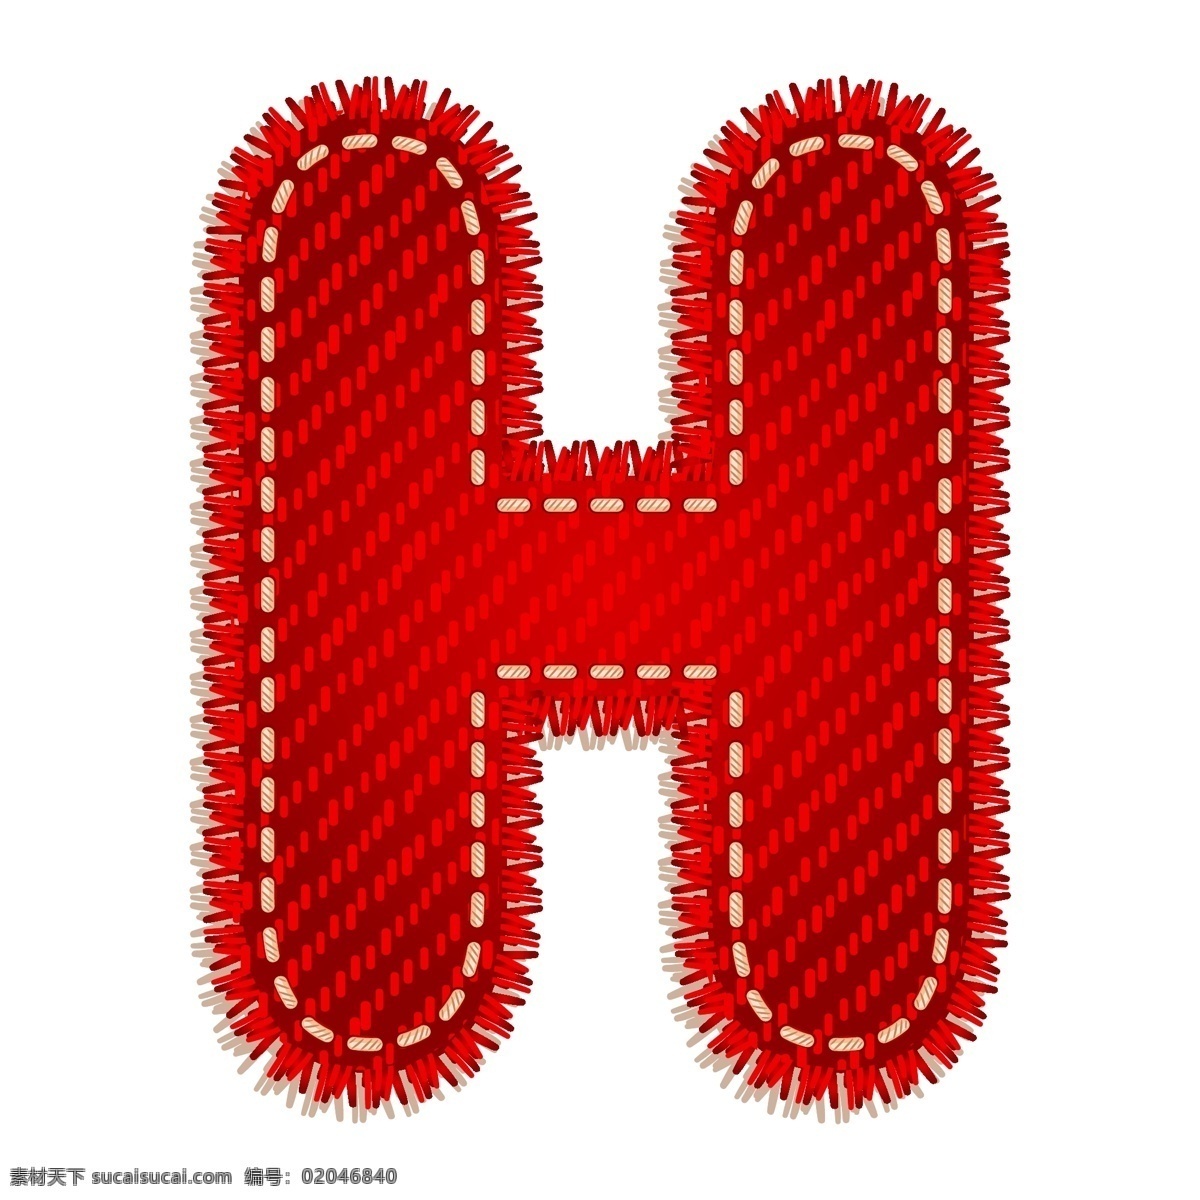 红色字母h 红色 字母 卡通字母 卡通图案 节日素材 h 书画文字 文化艺术 矢量素材 白色